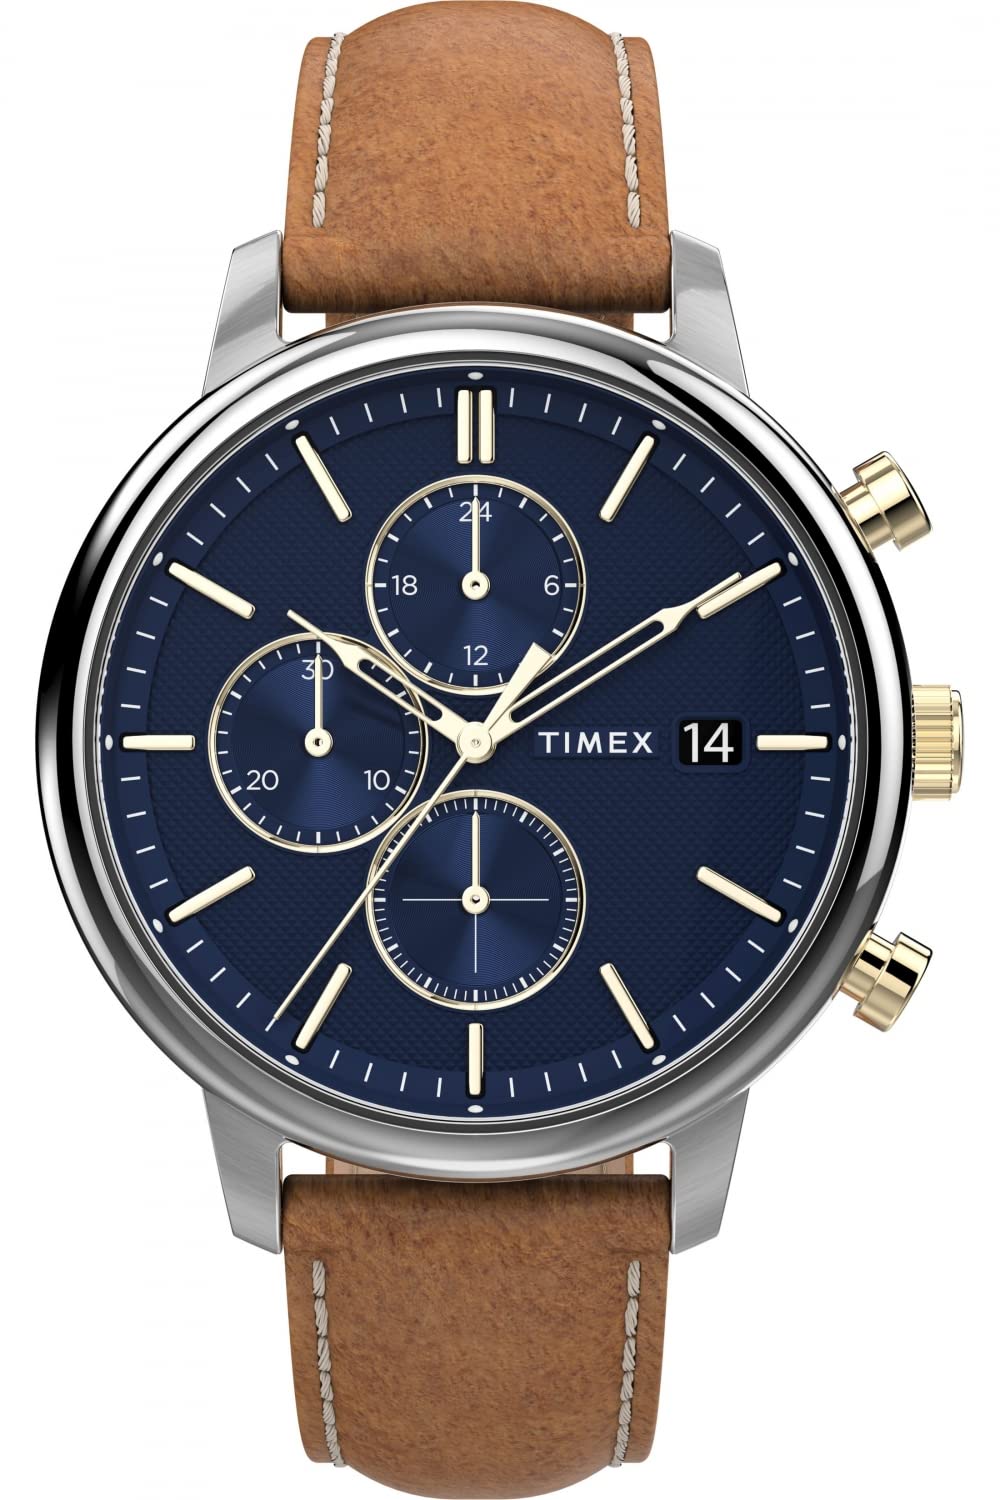 Timex Watch TW2U39000